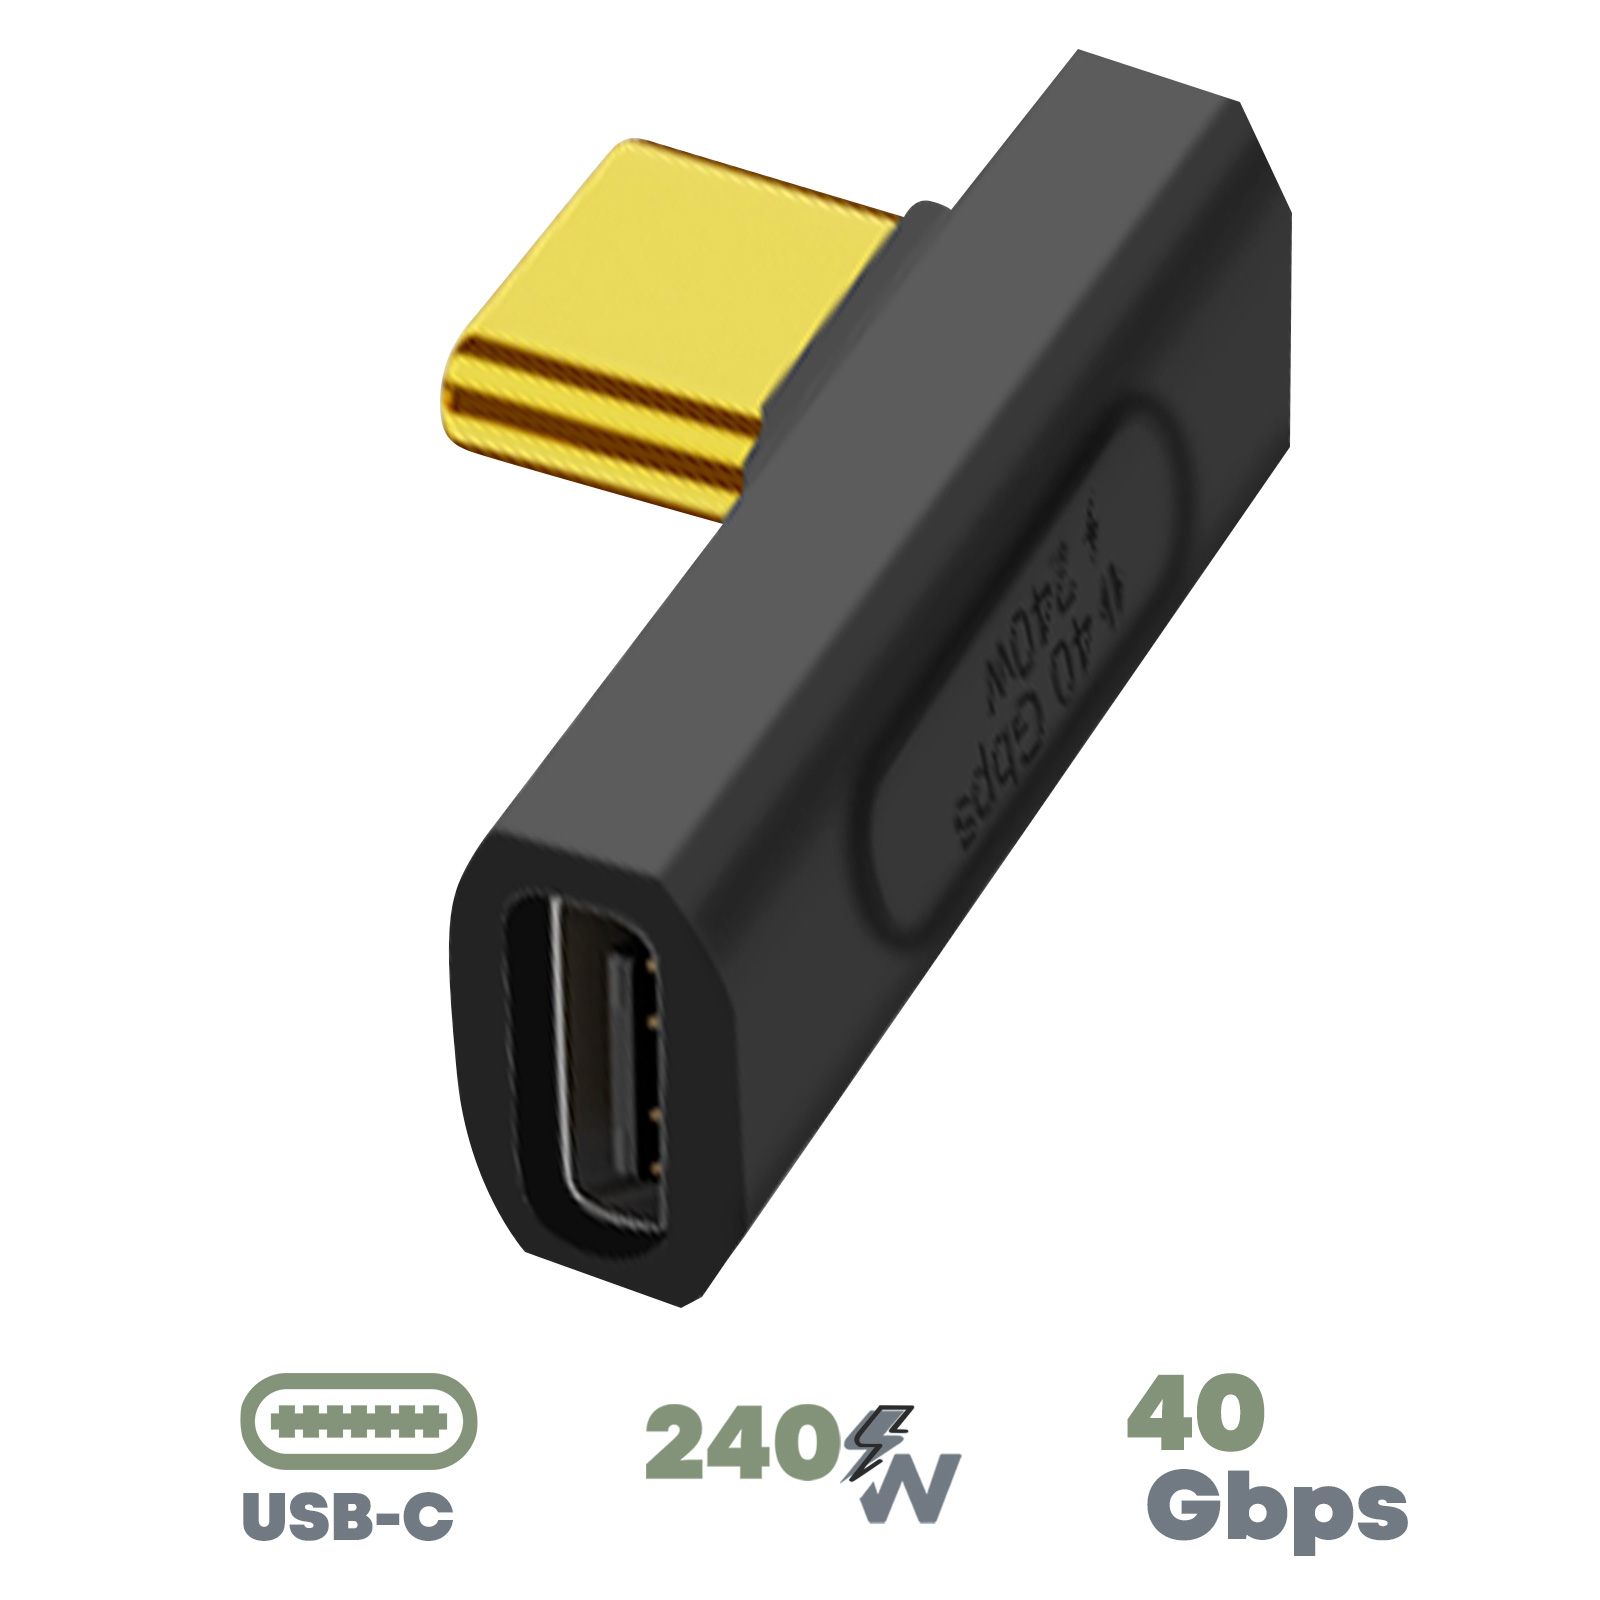 USB-C Buchse auf USB-C Stecker mittig abgewinkelter Adapter - 240W, 40 Gbps  - Schwarz - German